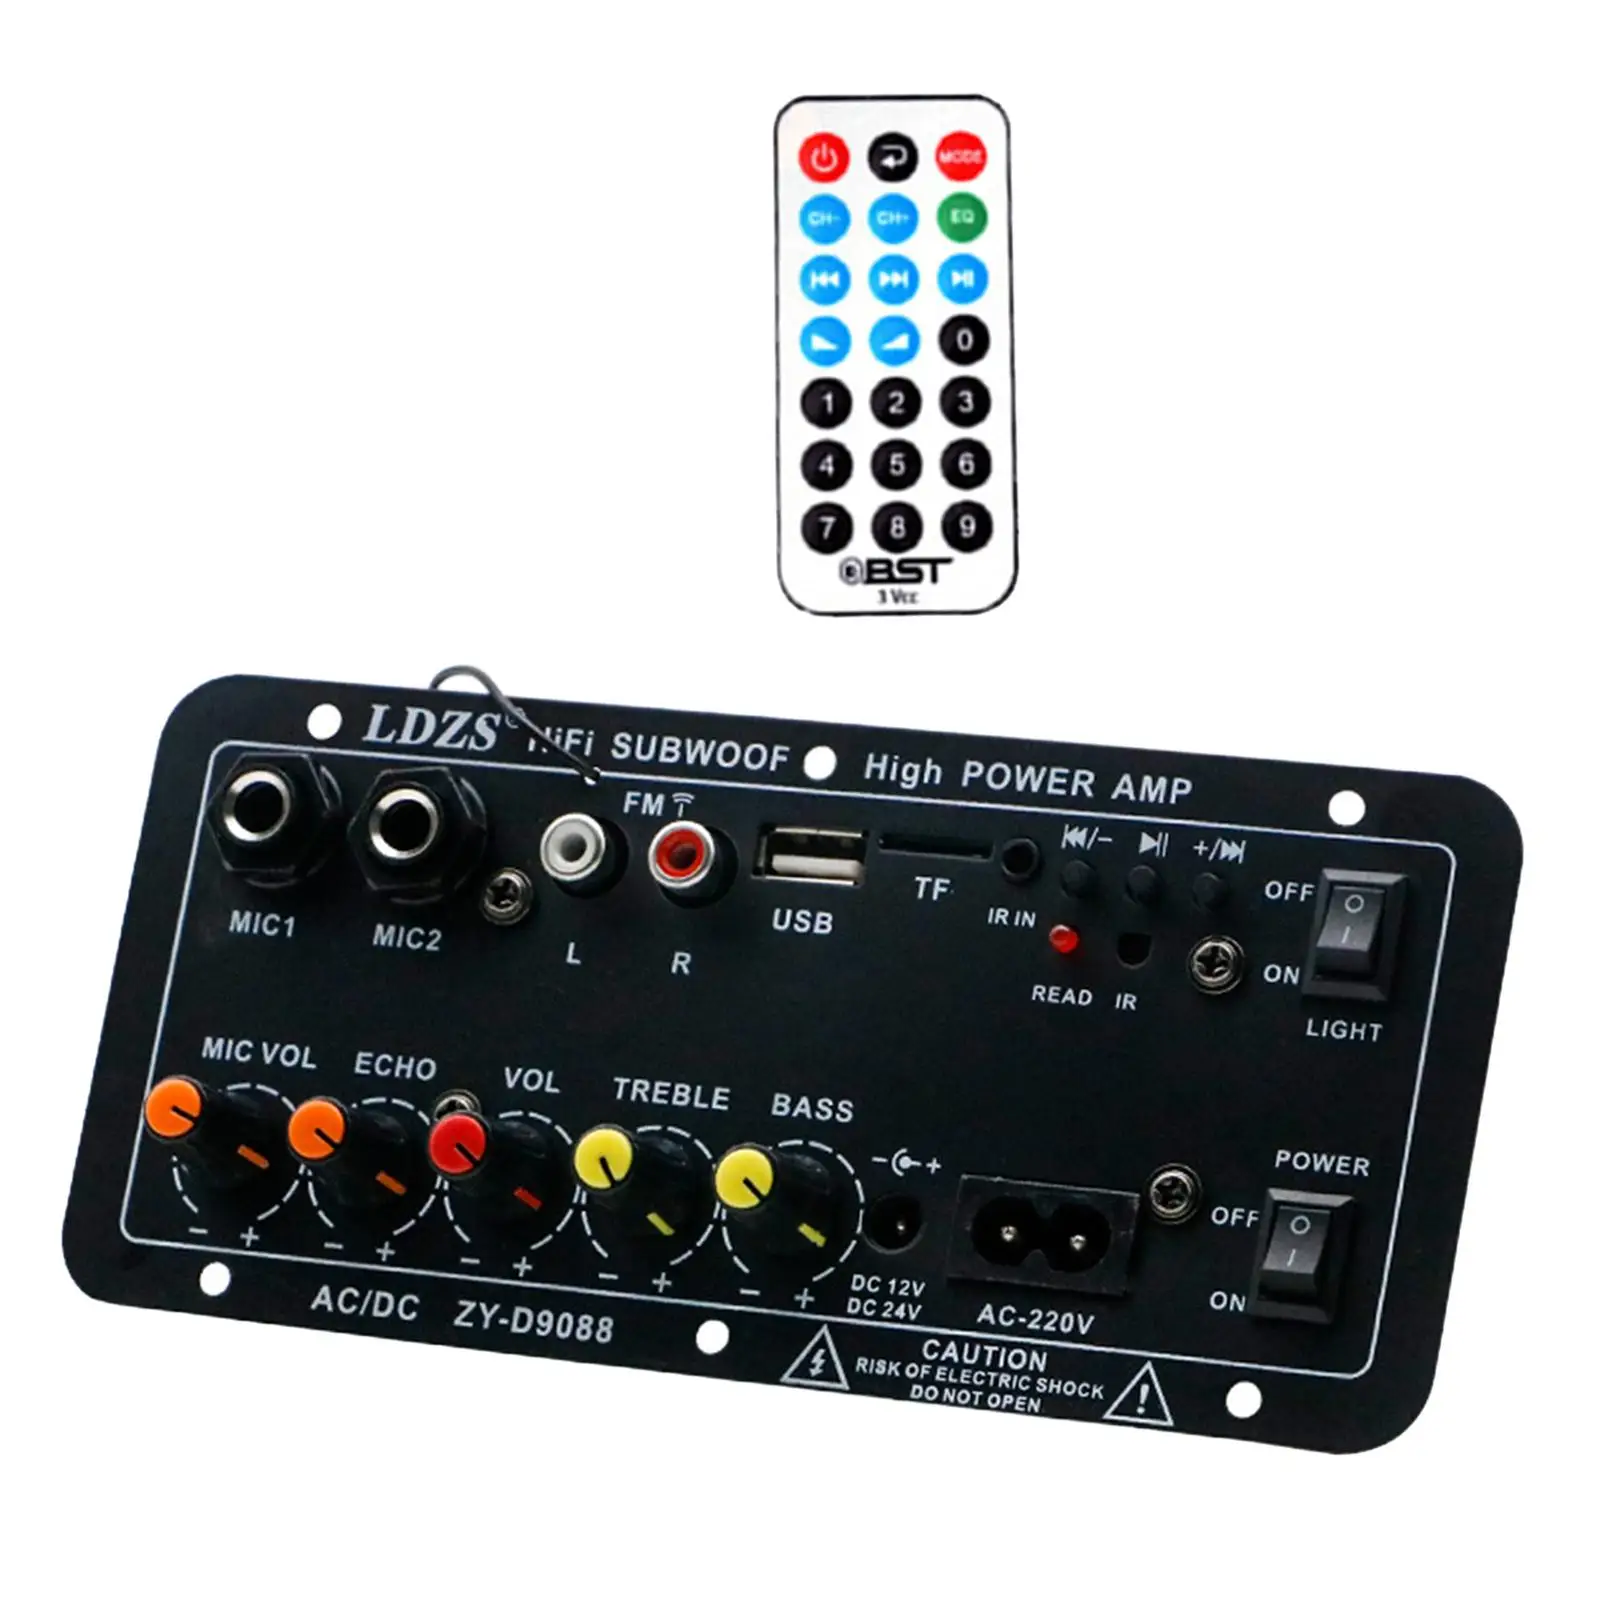 Microphone Karaoke Power Amplifier Board Premium Digital Audio Amplifier Board for Tv Laptops Motorcycles KTV Speaker